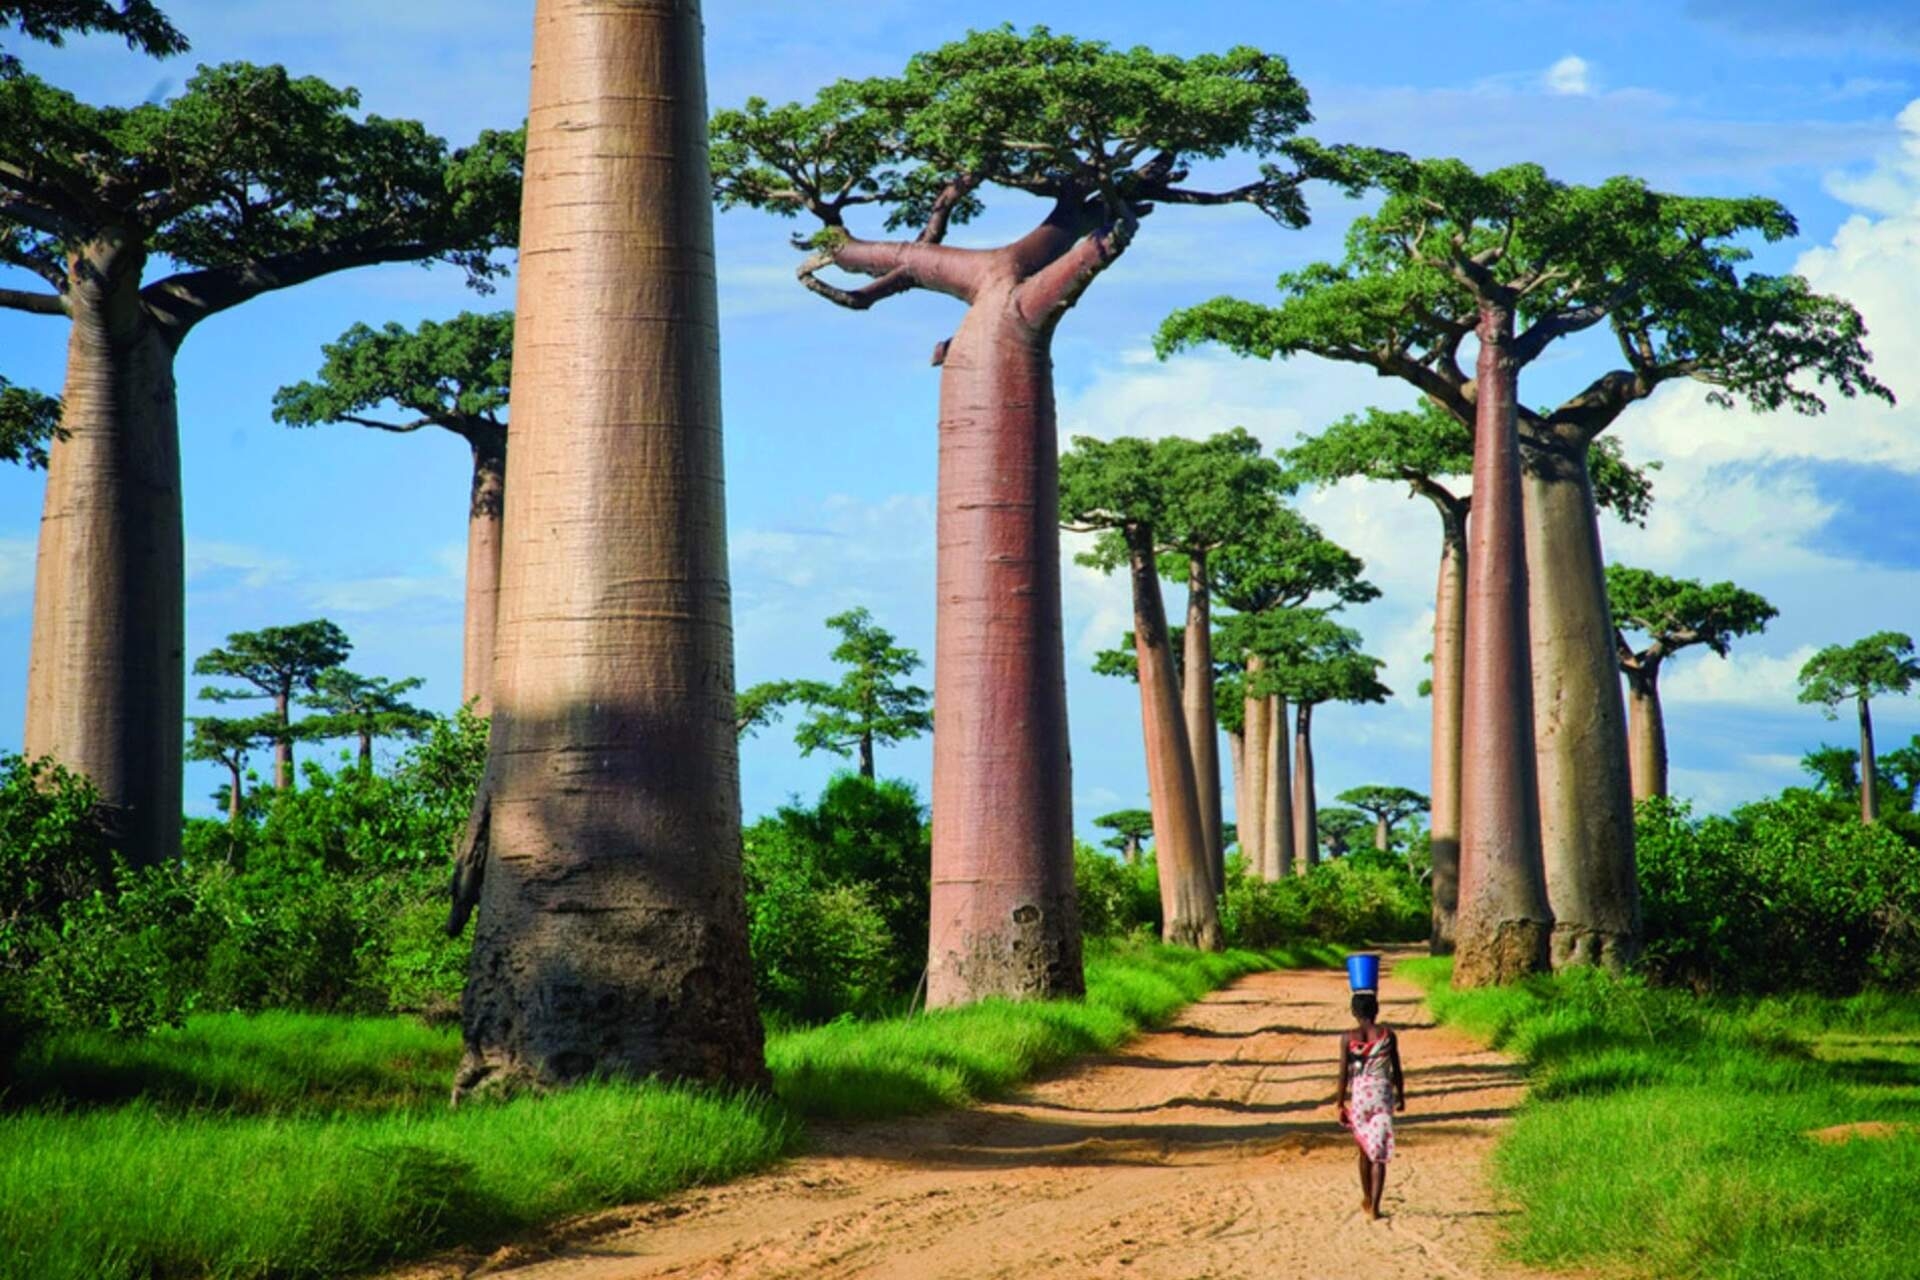 Madagaskar: Unregelmäßige Regenfälle und Gesteinserosion spielen eine entscheidende Rolle bei der Entstehung und Entwicklung neuer Arten